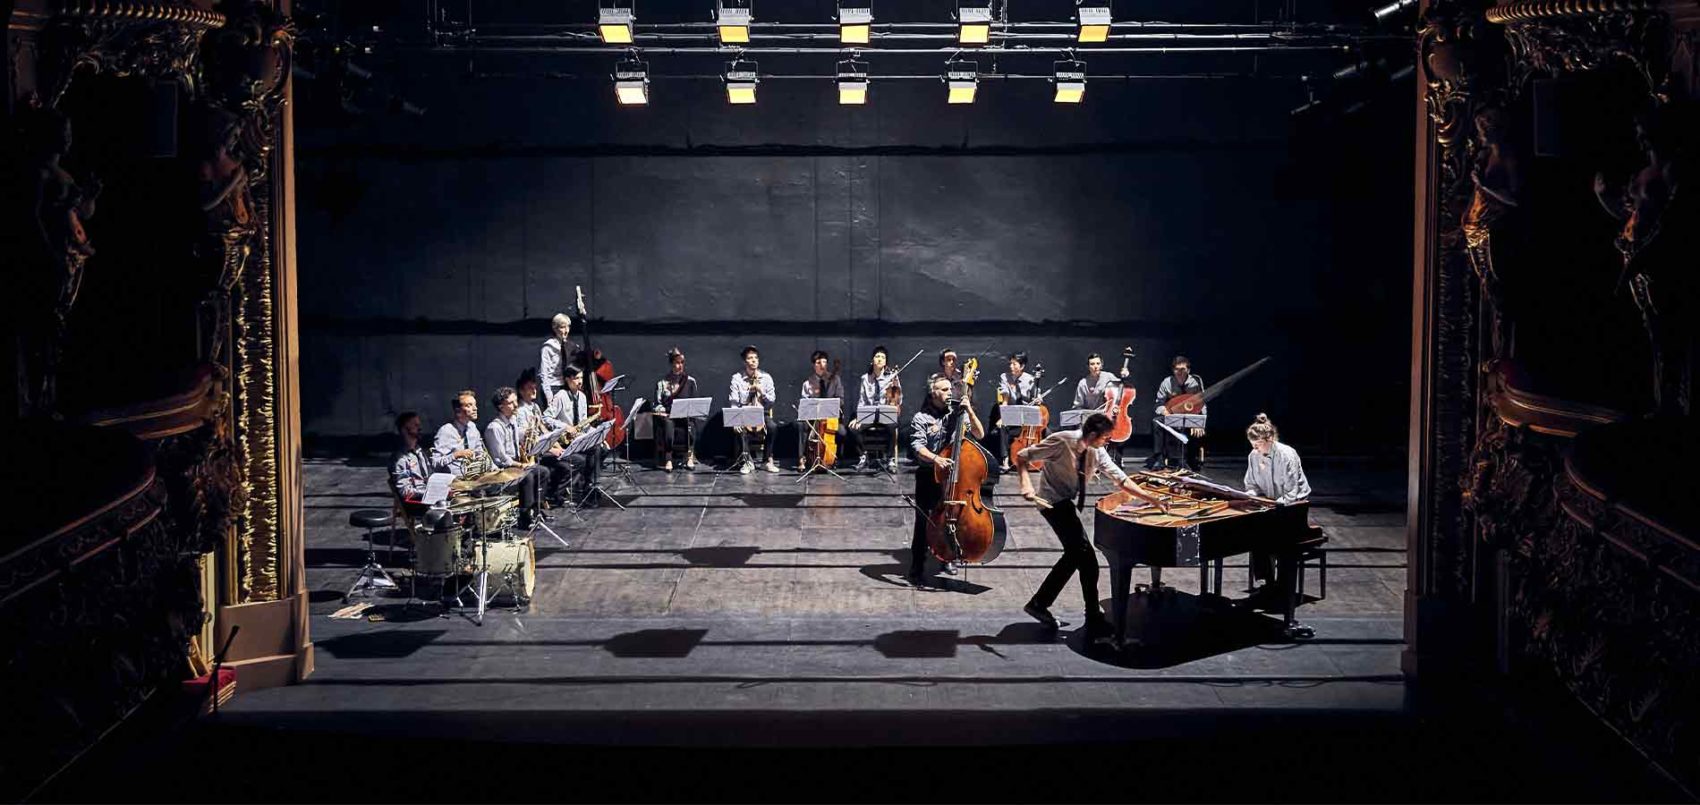 Plan d'ensemble de l'orchestre sur la scène. Ils et elles sont en carré et un piano et une contrebasse sont au premier plan à droite